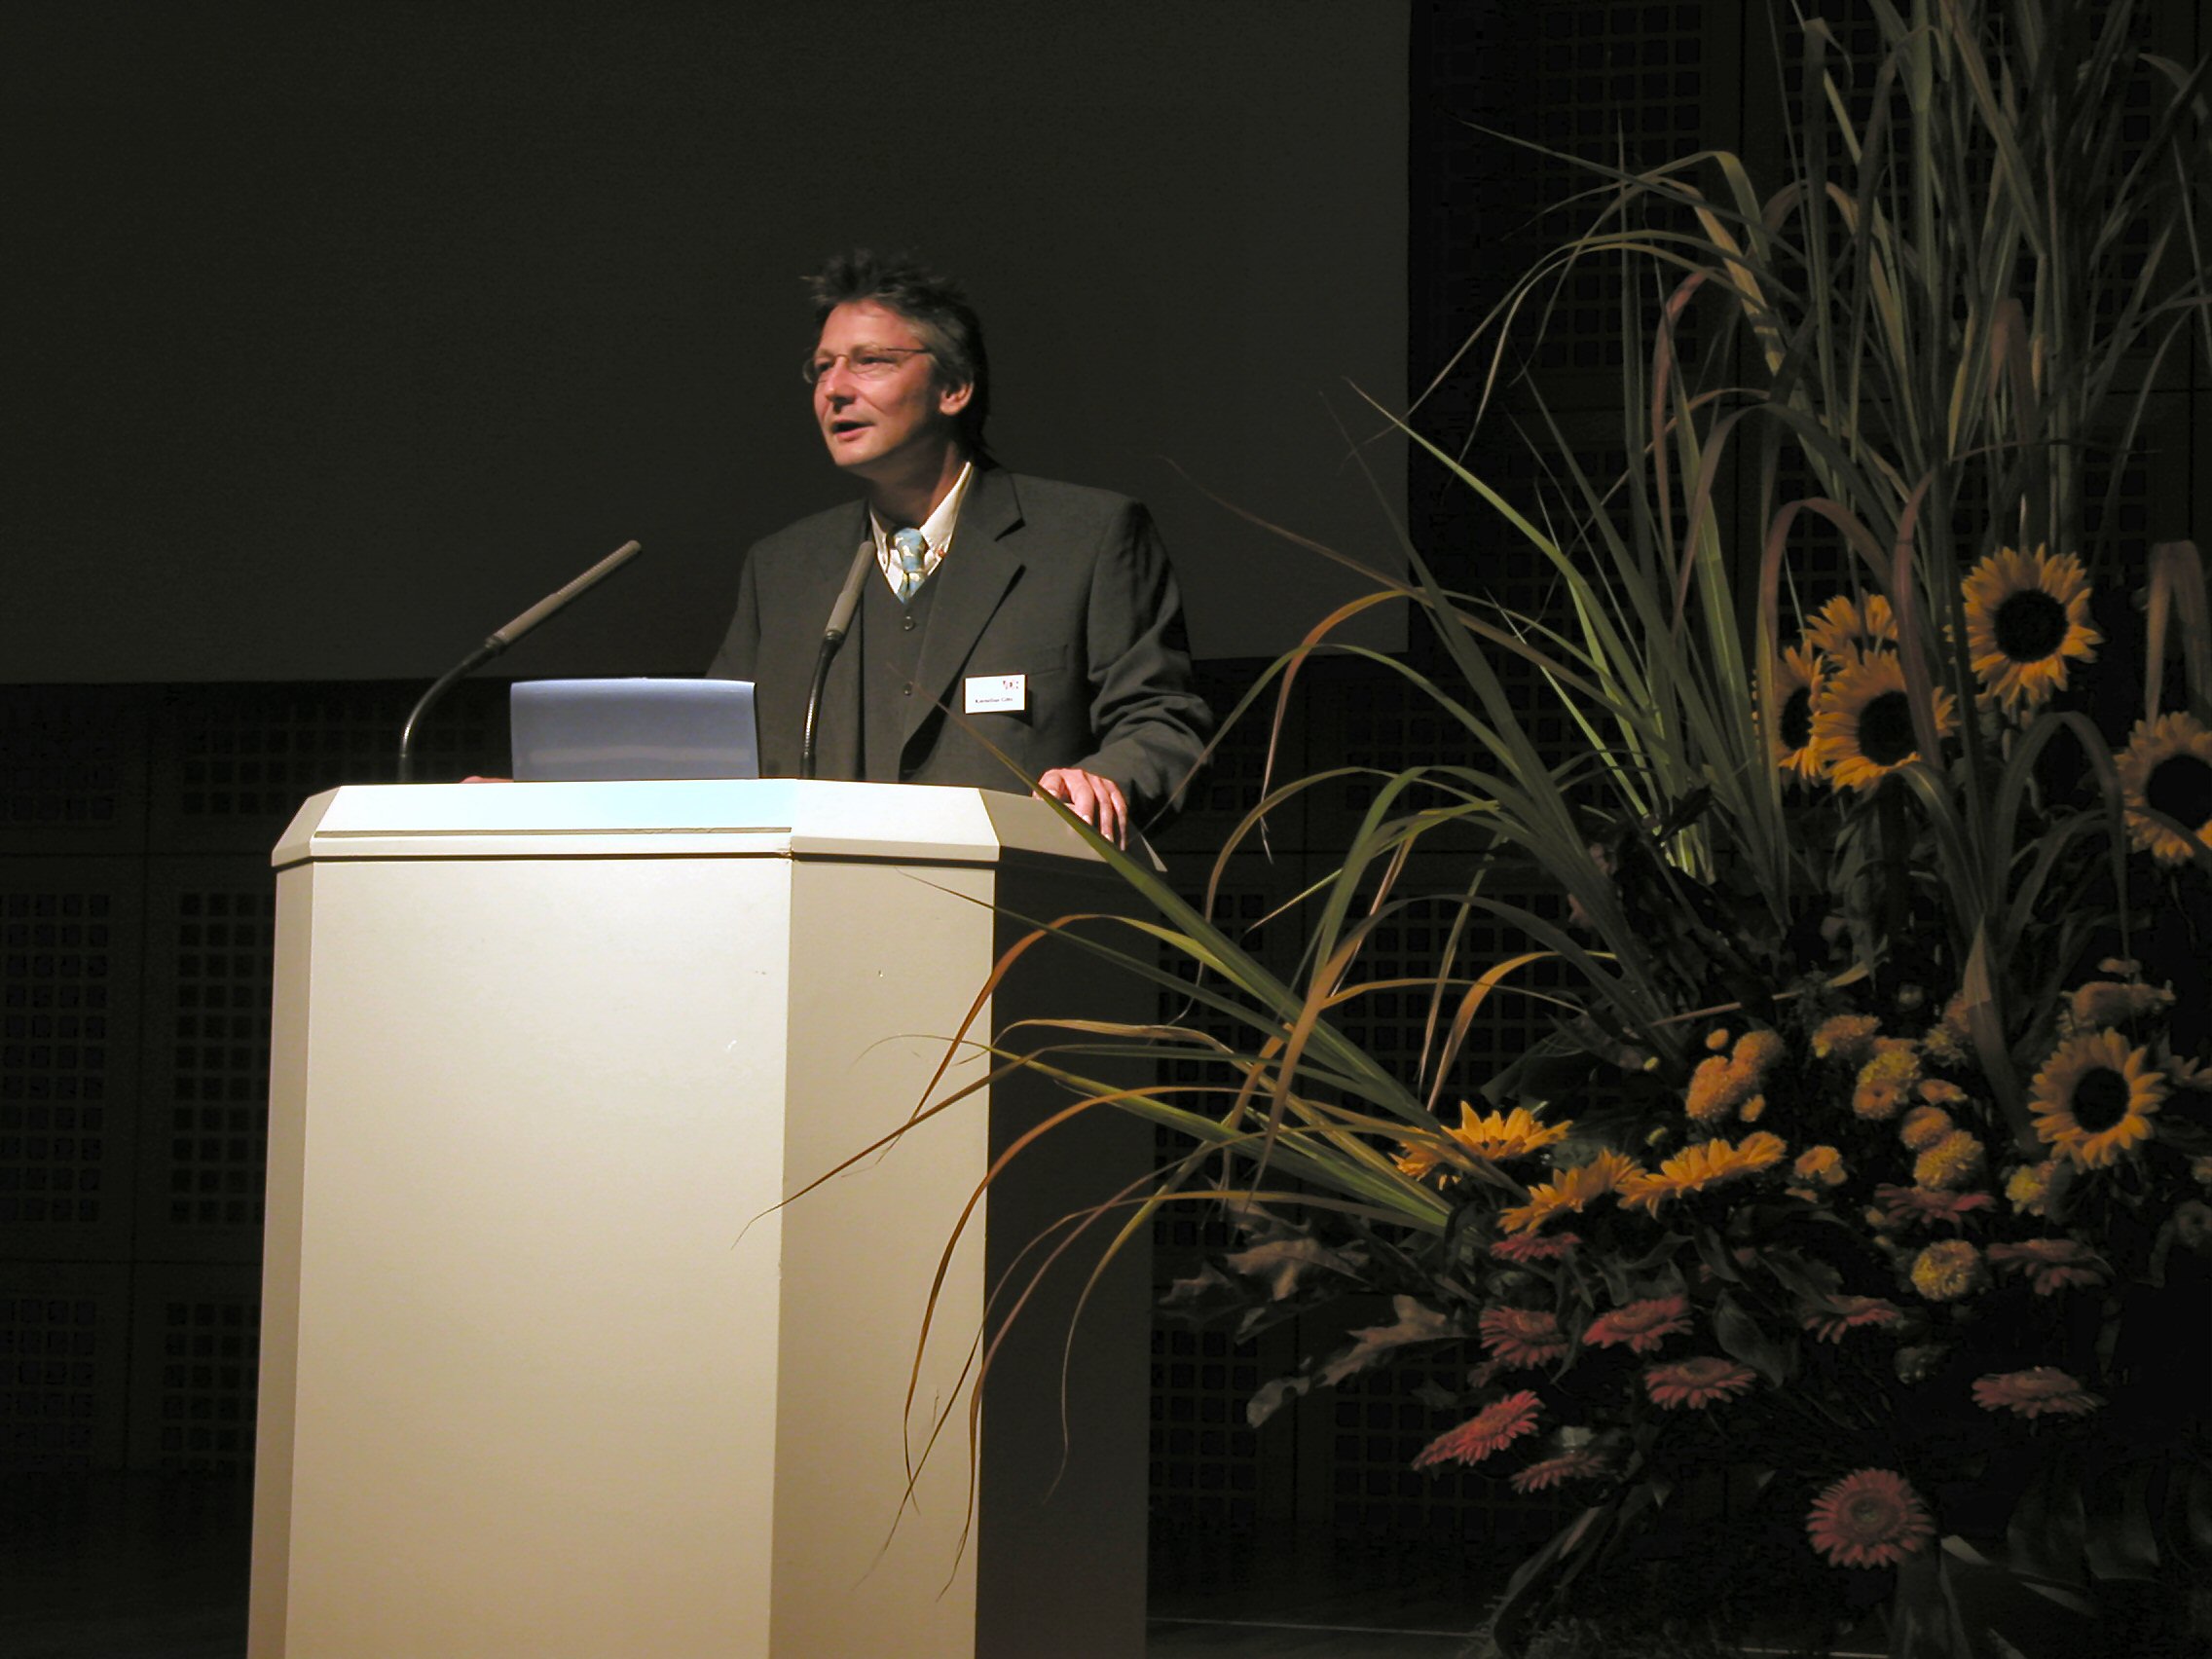 VDR-Präsident Kornelius Götz 2003 bei der VDR-Tagung in Düsseldorf.